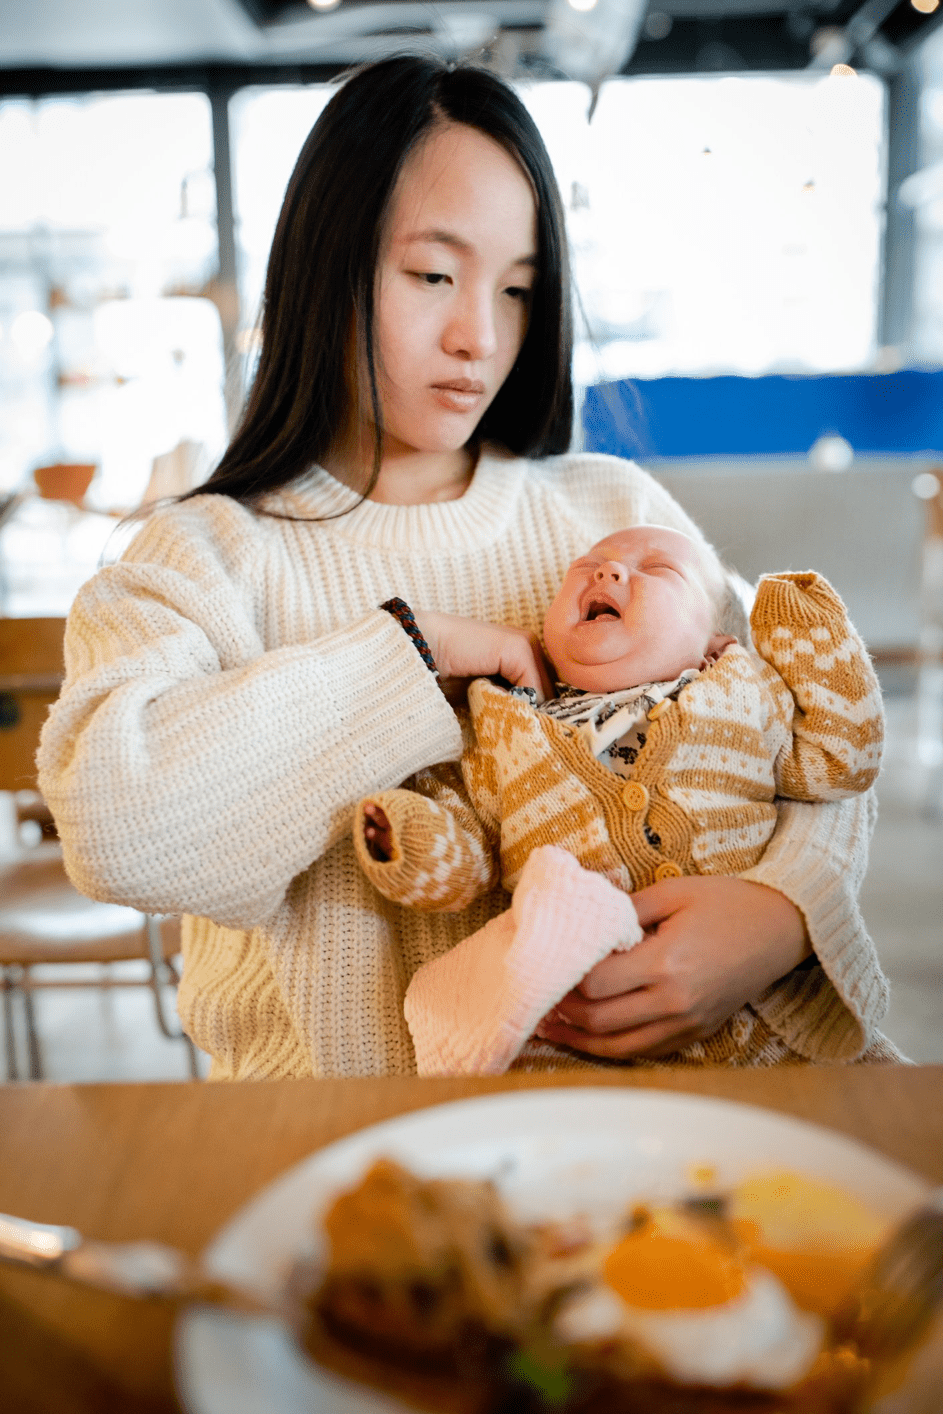 Mutter hält ihr Baby im Café. | Quelle: Getty Images